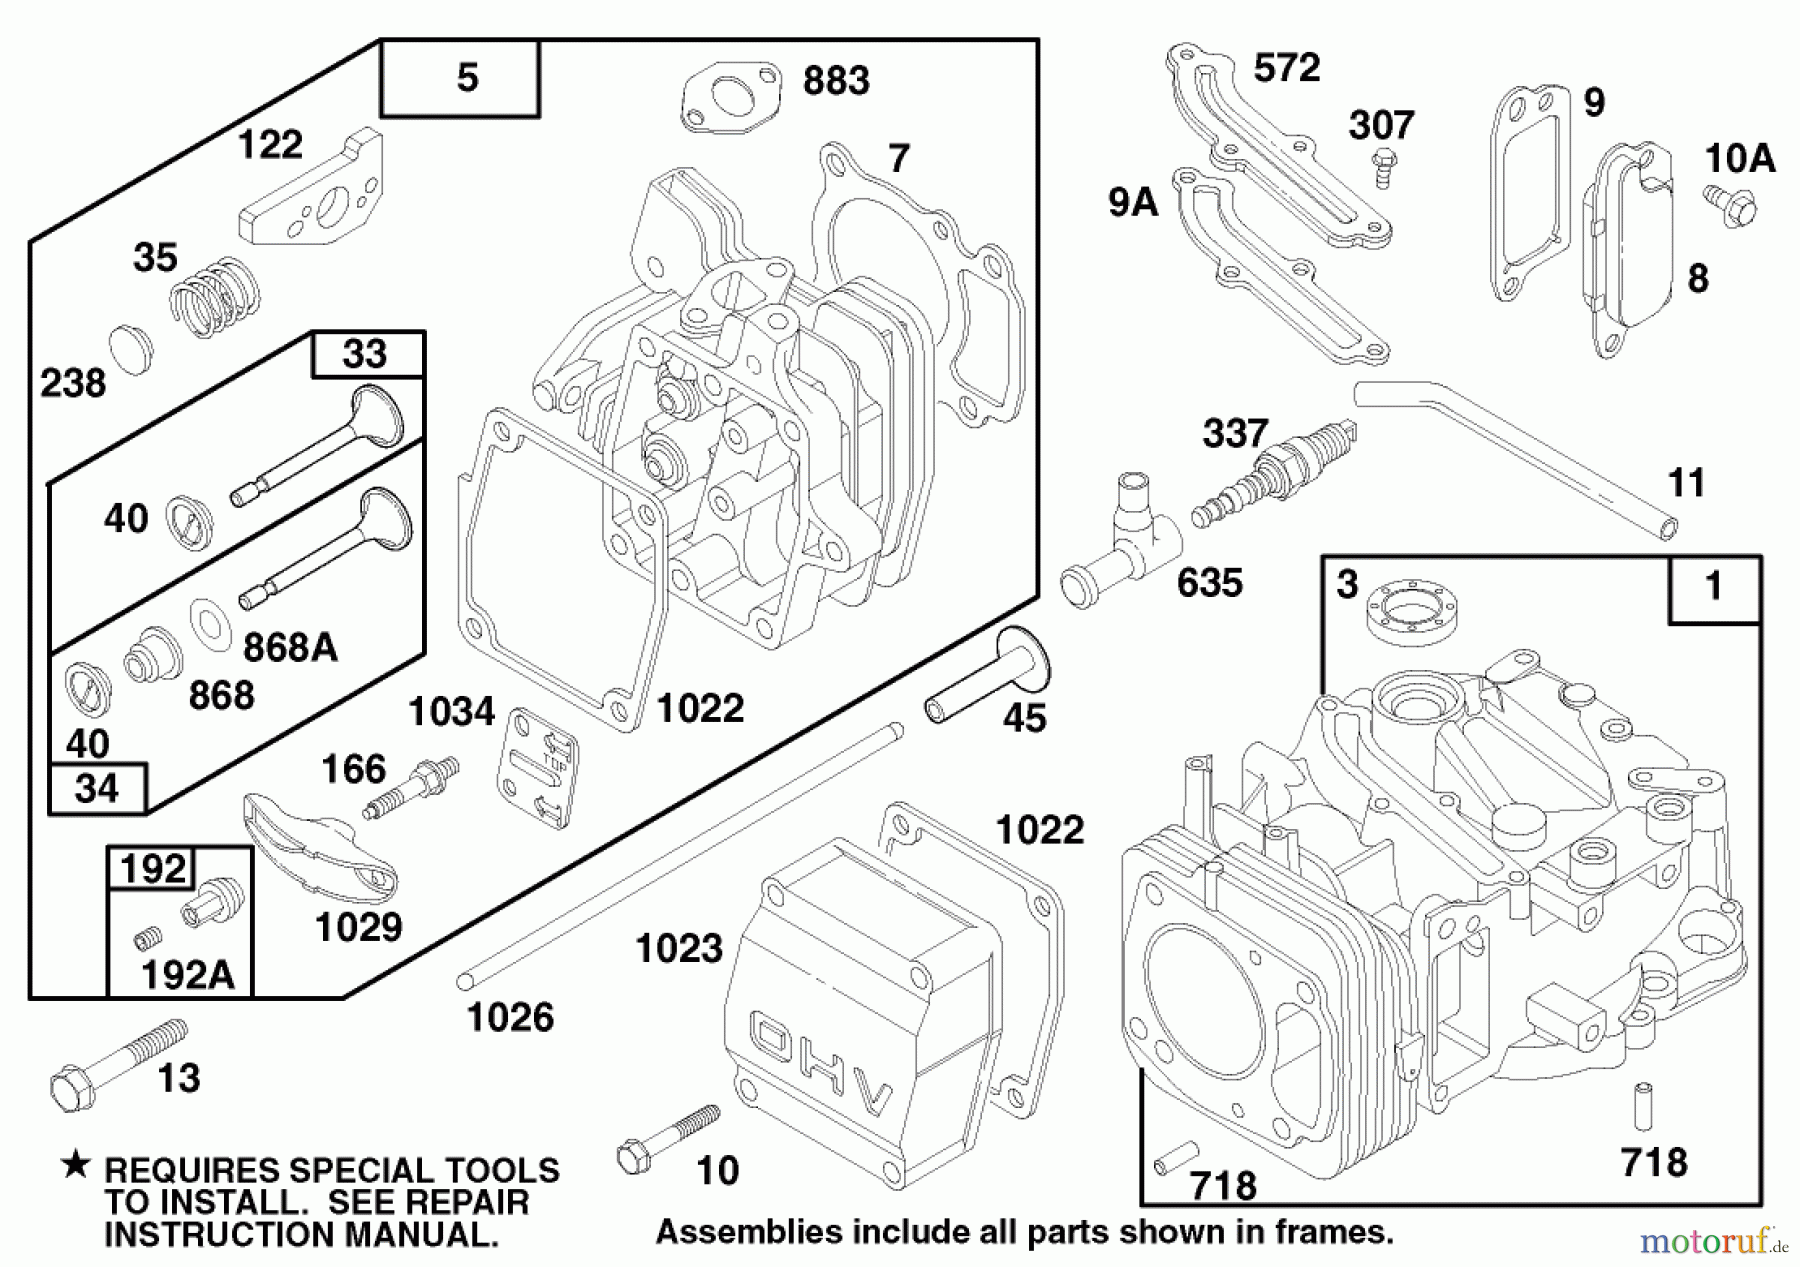  Toro Neu Mowers, Walk-Behind Seite 2 22154B - Toro Lawnmower, 1996 (6900001-6999999) ENGINE GTS 150 #1